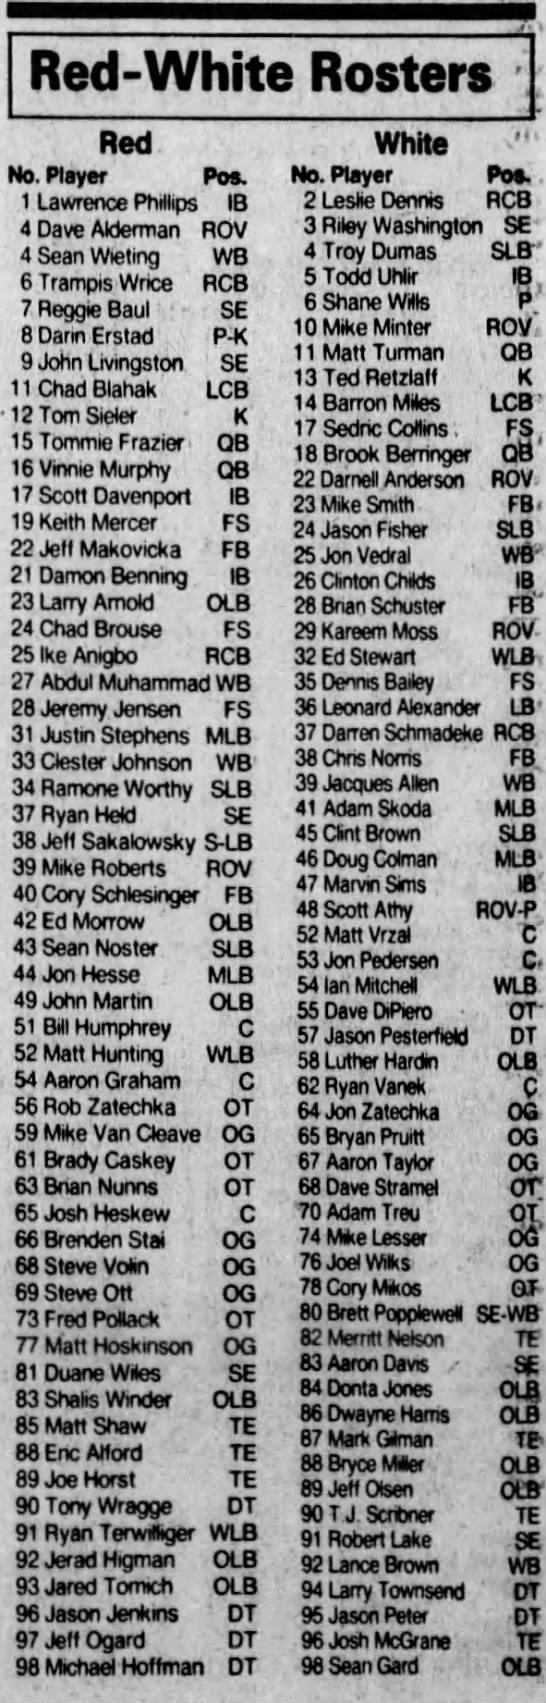 1994 Nebraska spring game rosters - 